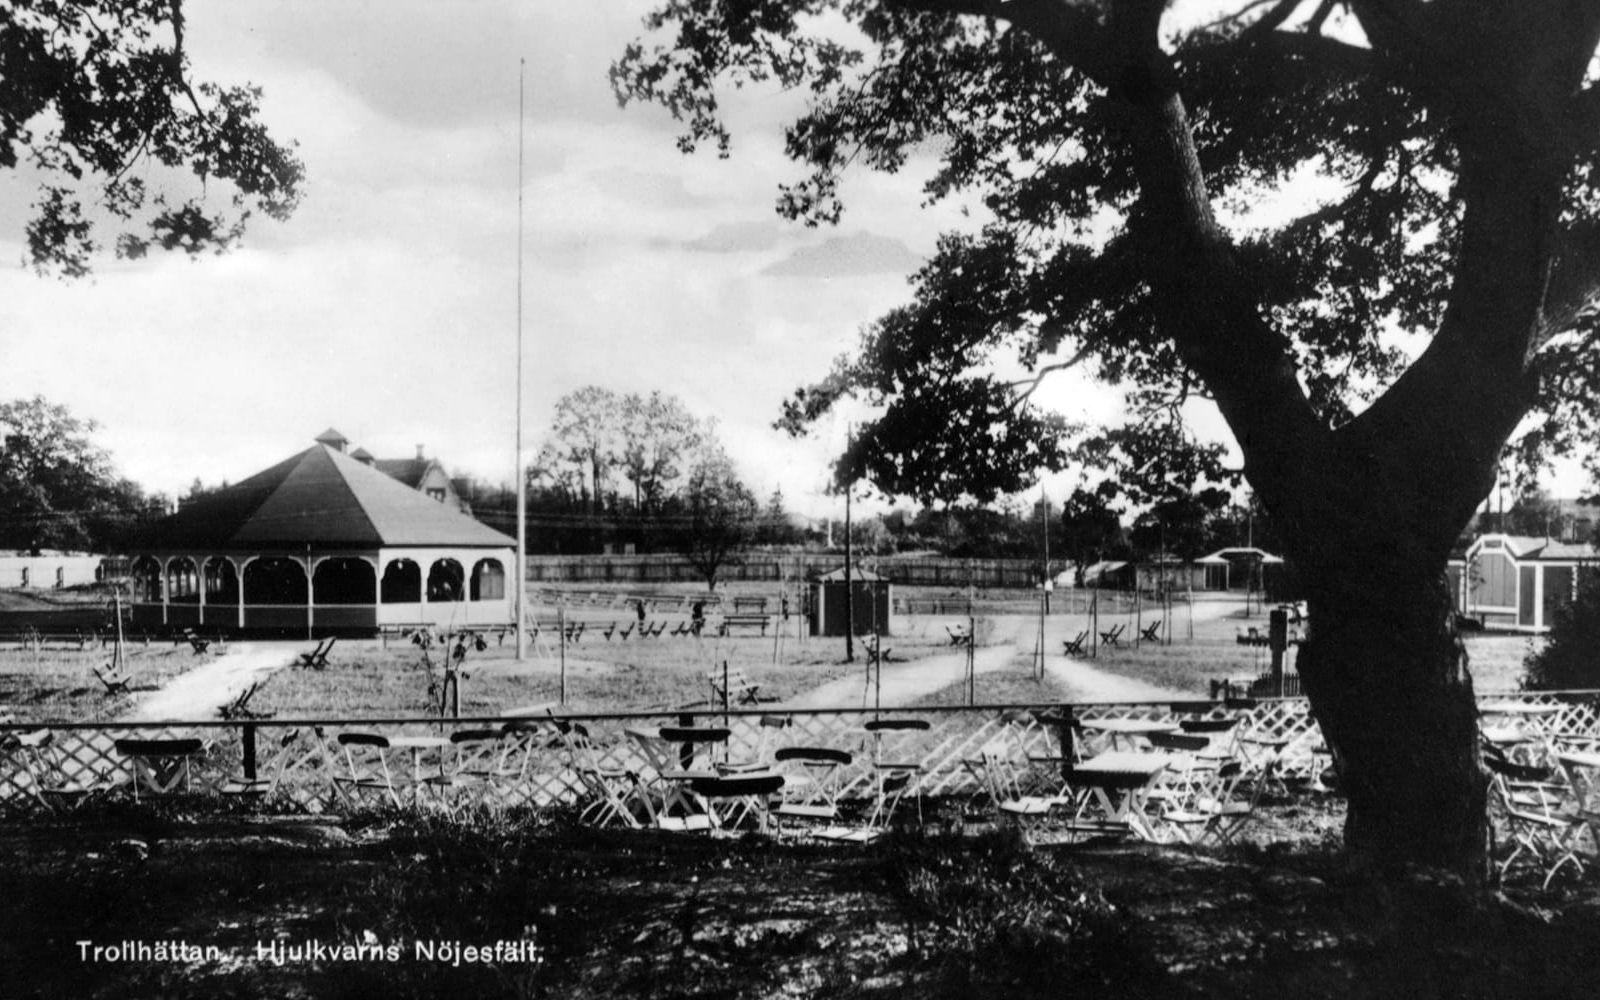 Vykortet från 1929 visar Hjulkvarns nöjesfält. Några år senare flyttades Folkets park hit, från Tingvalla. Foto: Innovatums bildarkiv. 